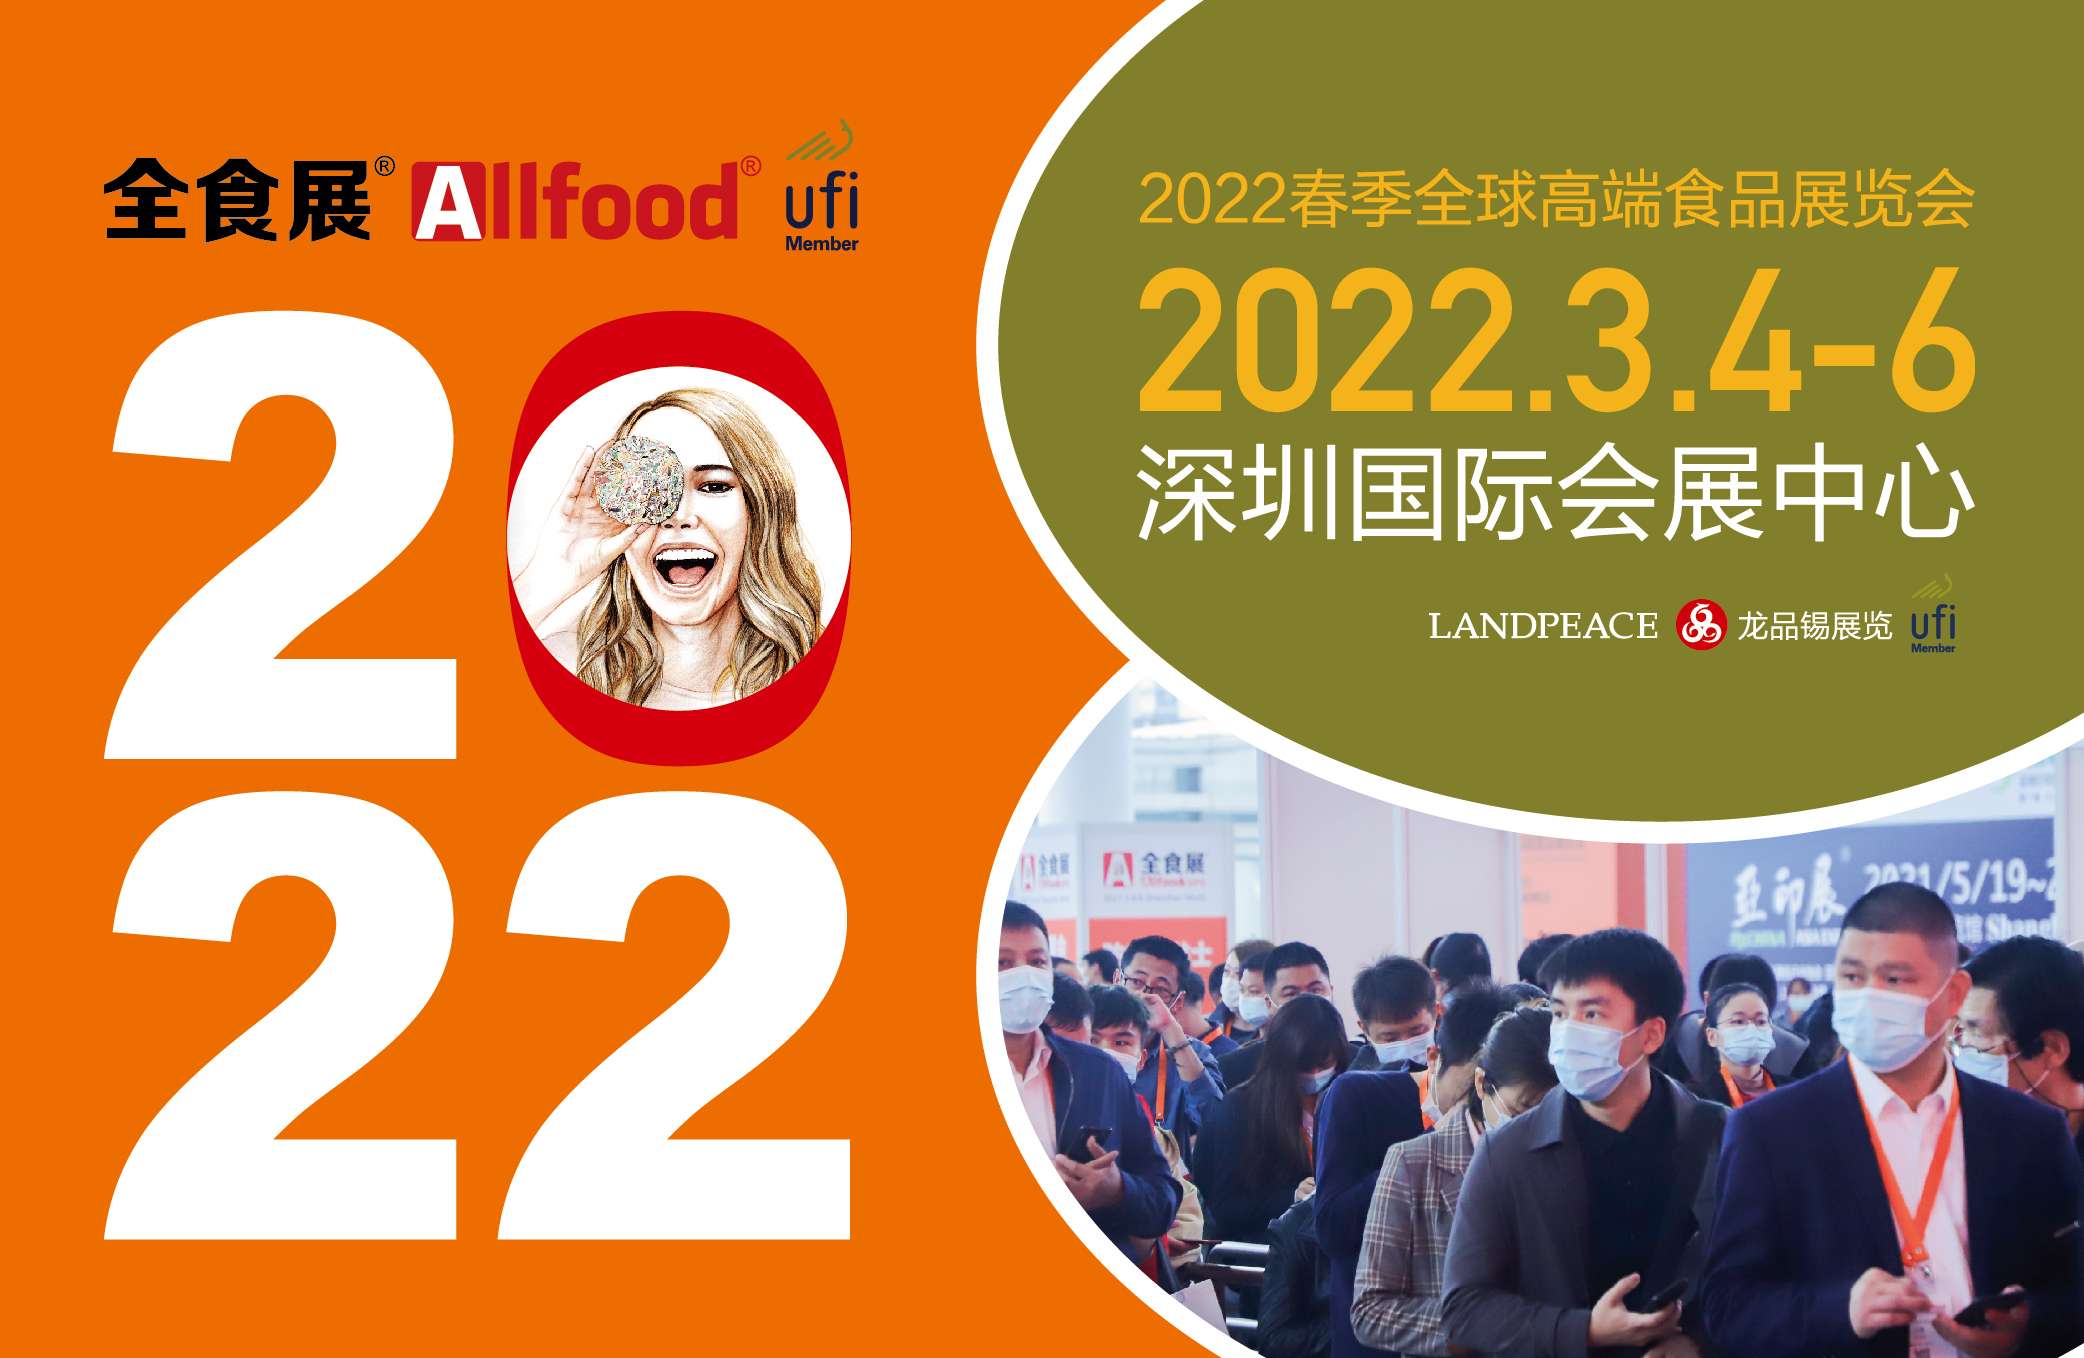 2022 春季全球高端食品展览会